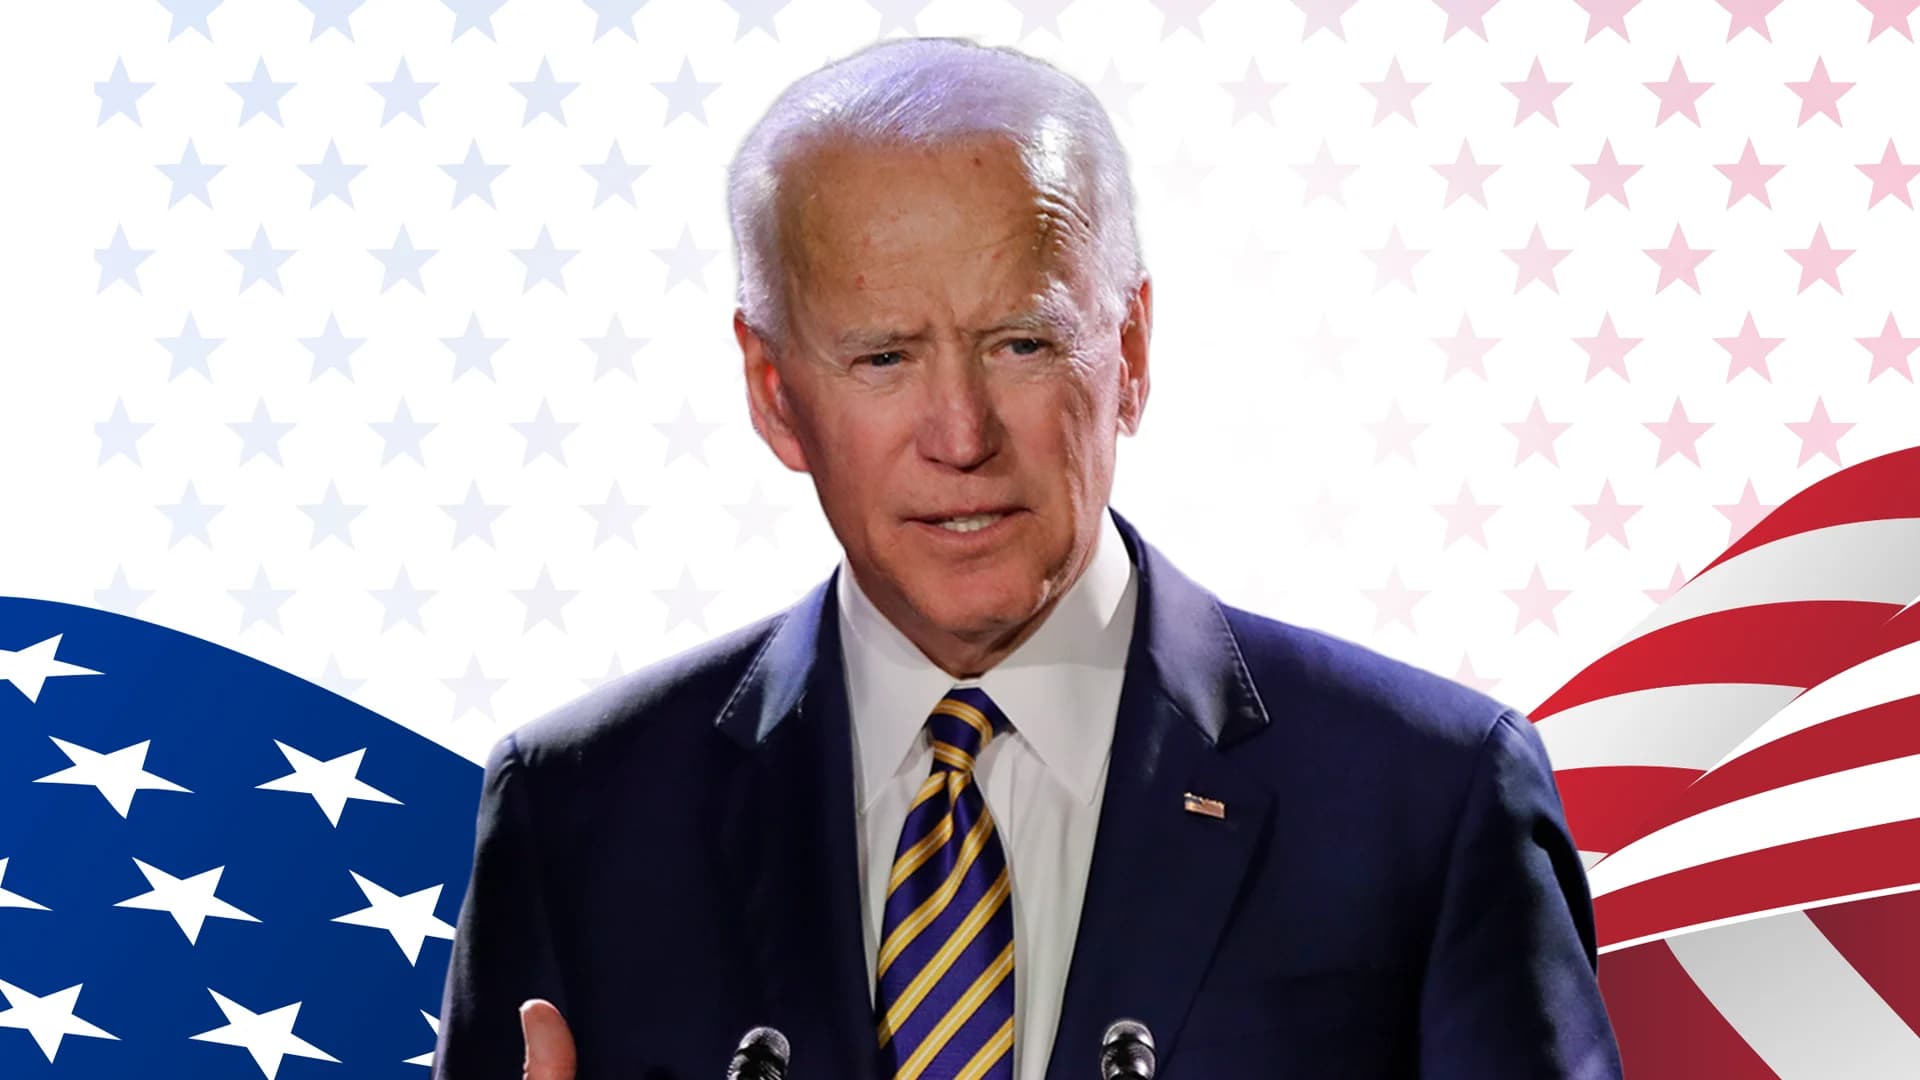 New Jersey certifies vote showing Joe Biden's victory